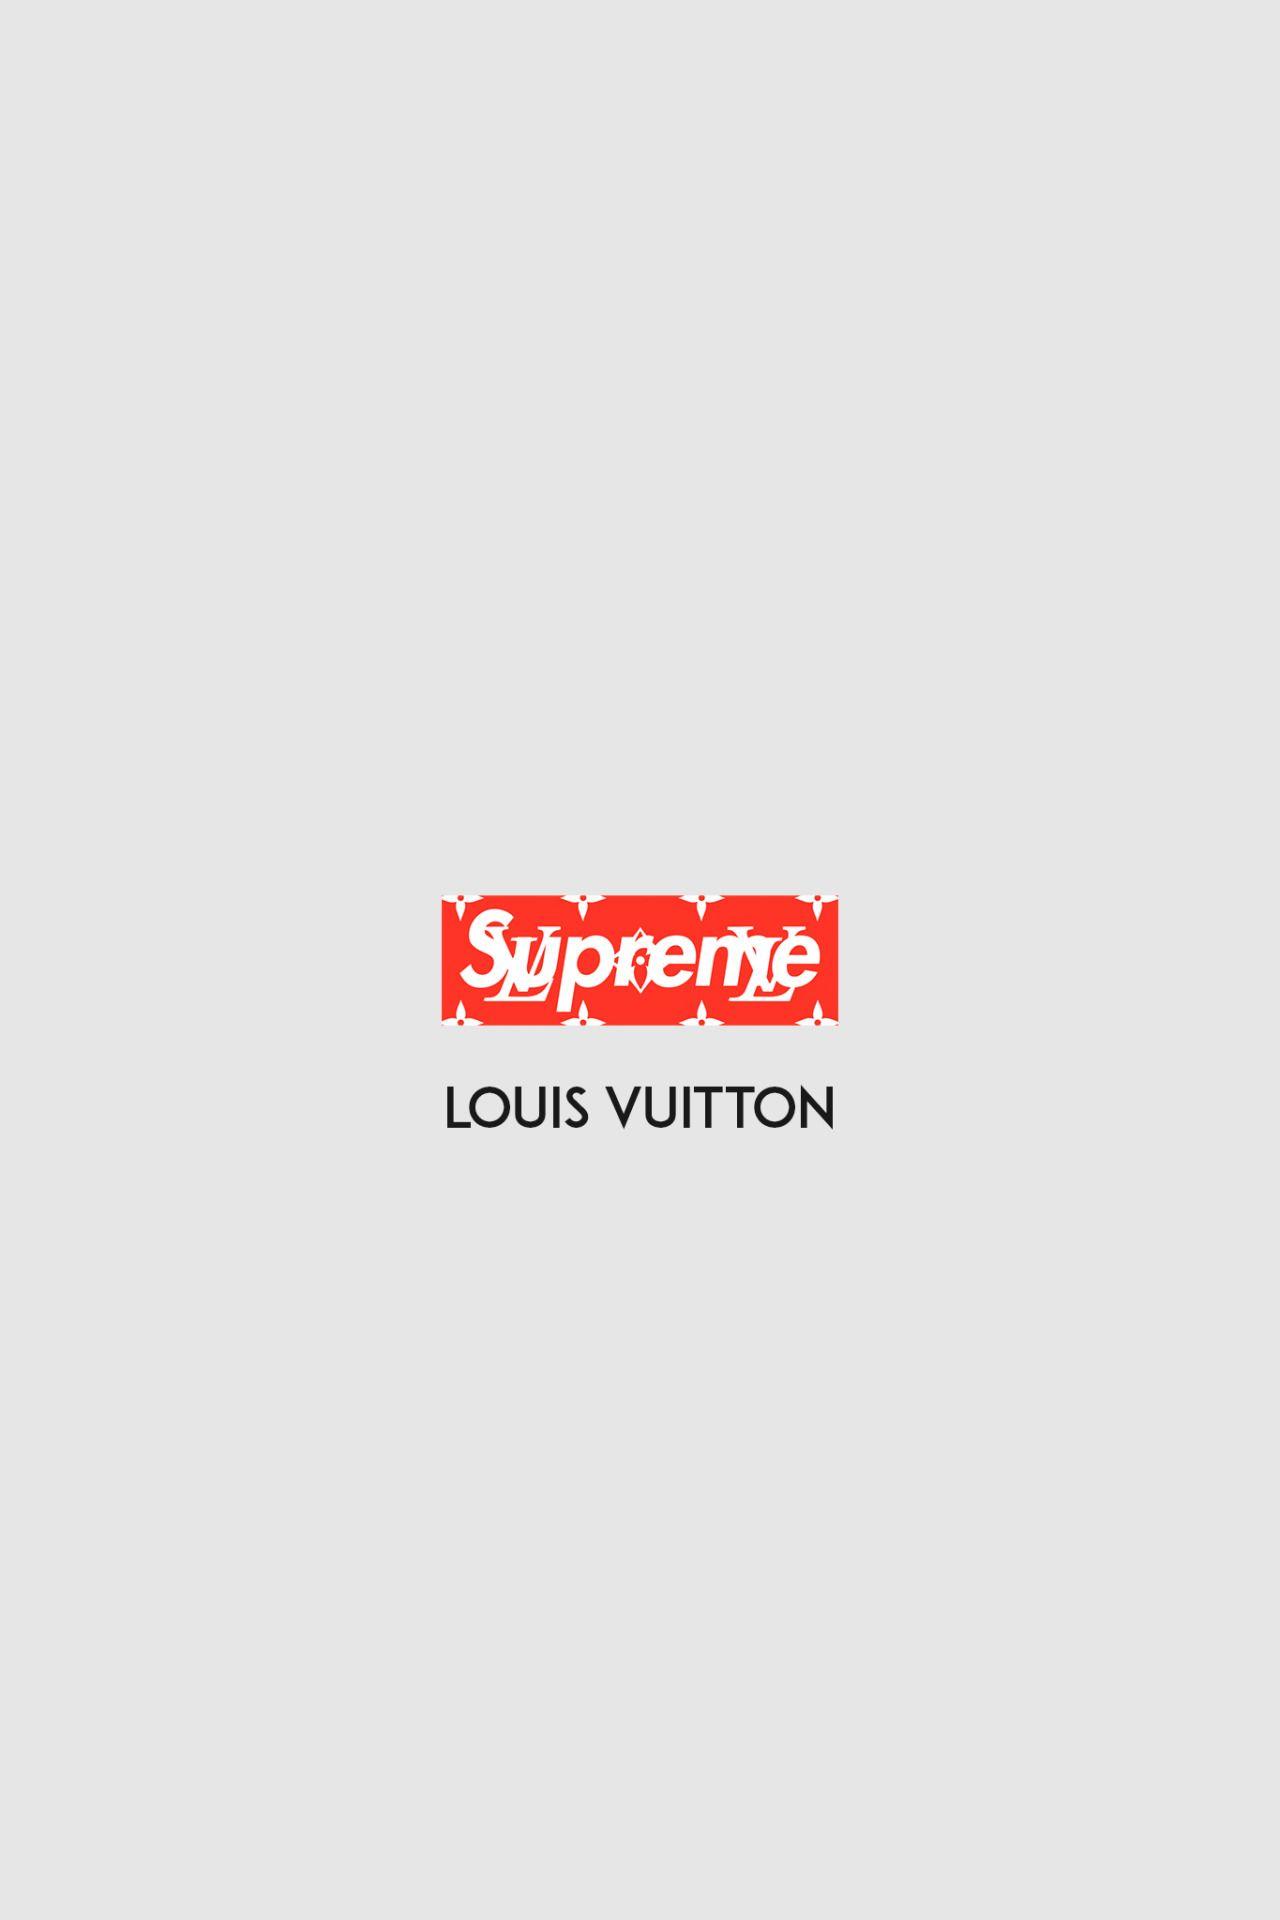 Loui Supreme Logo - Supreme Louis Vuitton Wallpapers - Wallpaper Cave